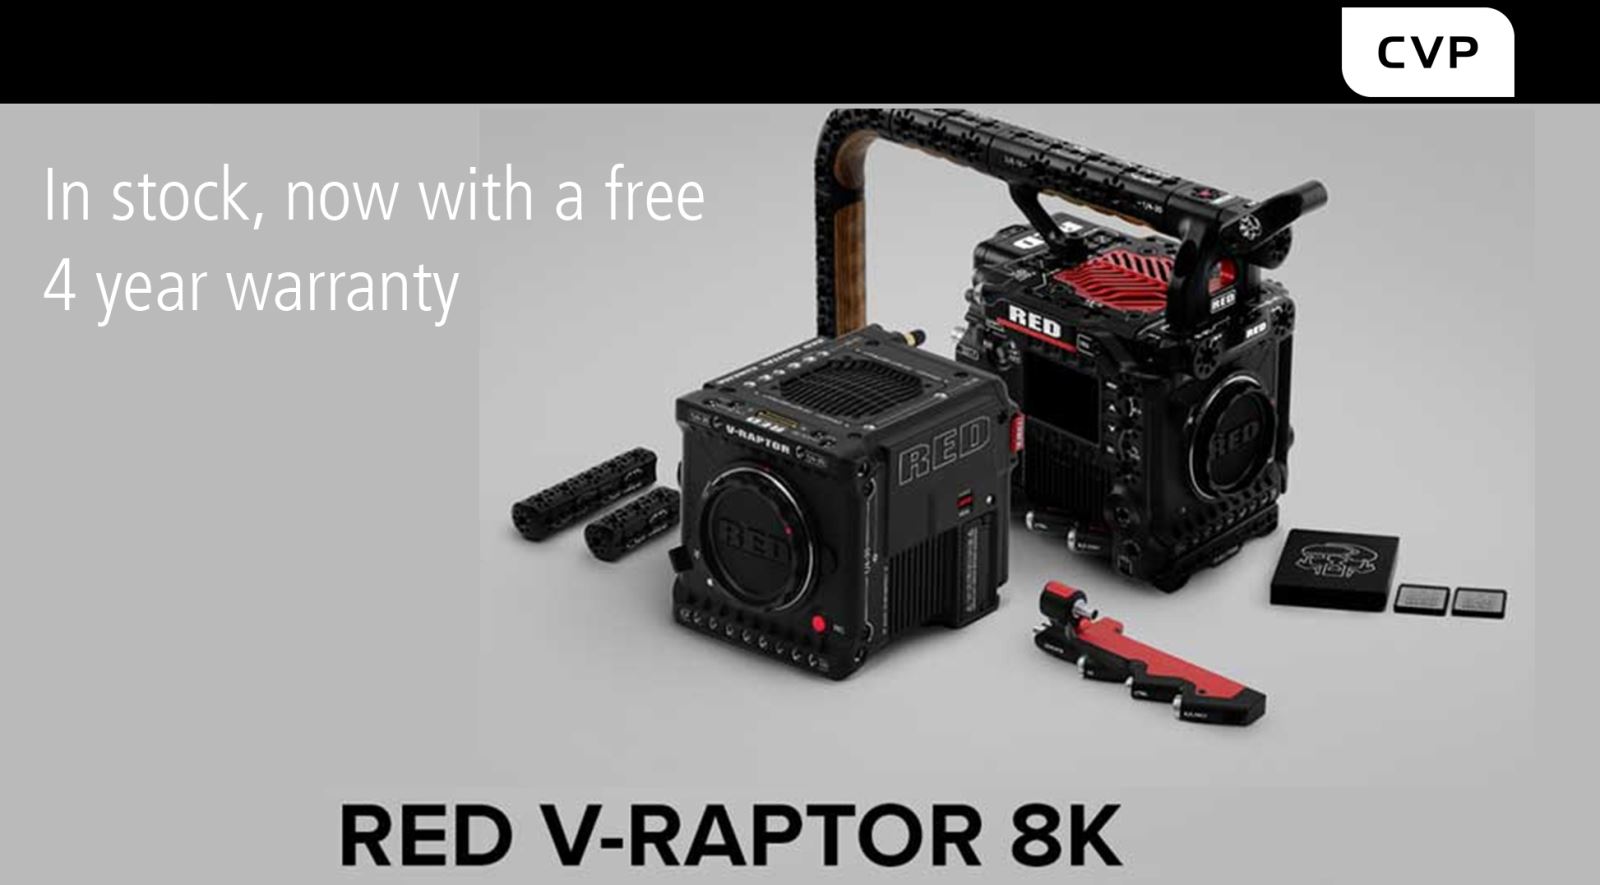 RED 4 year extended warranty on V-Raptor 8K